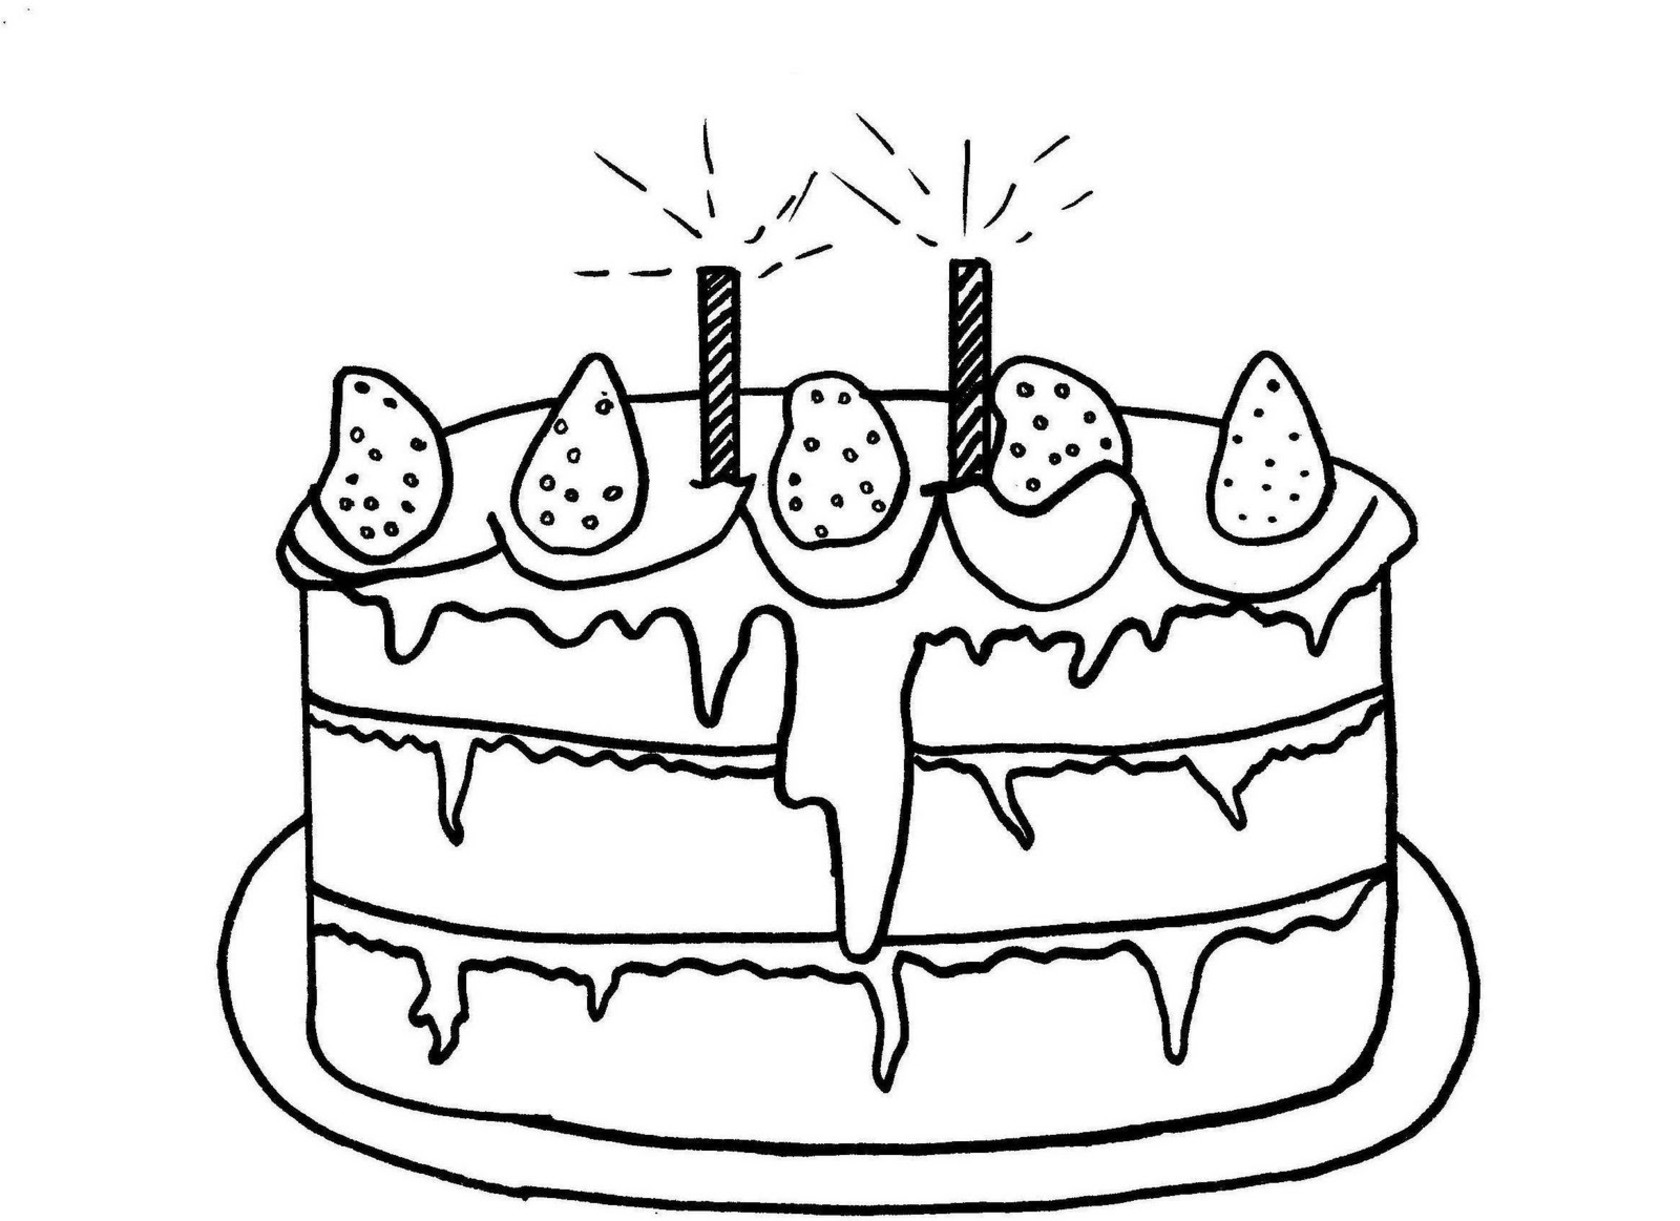 Торт распечатать а4. Торт раскраска для малышей. Торт раскраска для детей. Раскраска для малышей тортик. Раскраски тортики и пирожные.